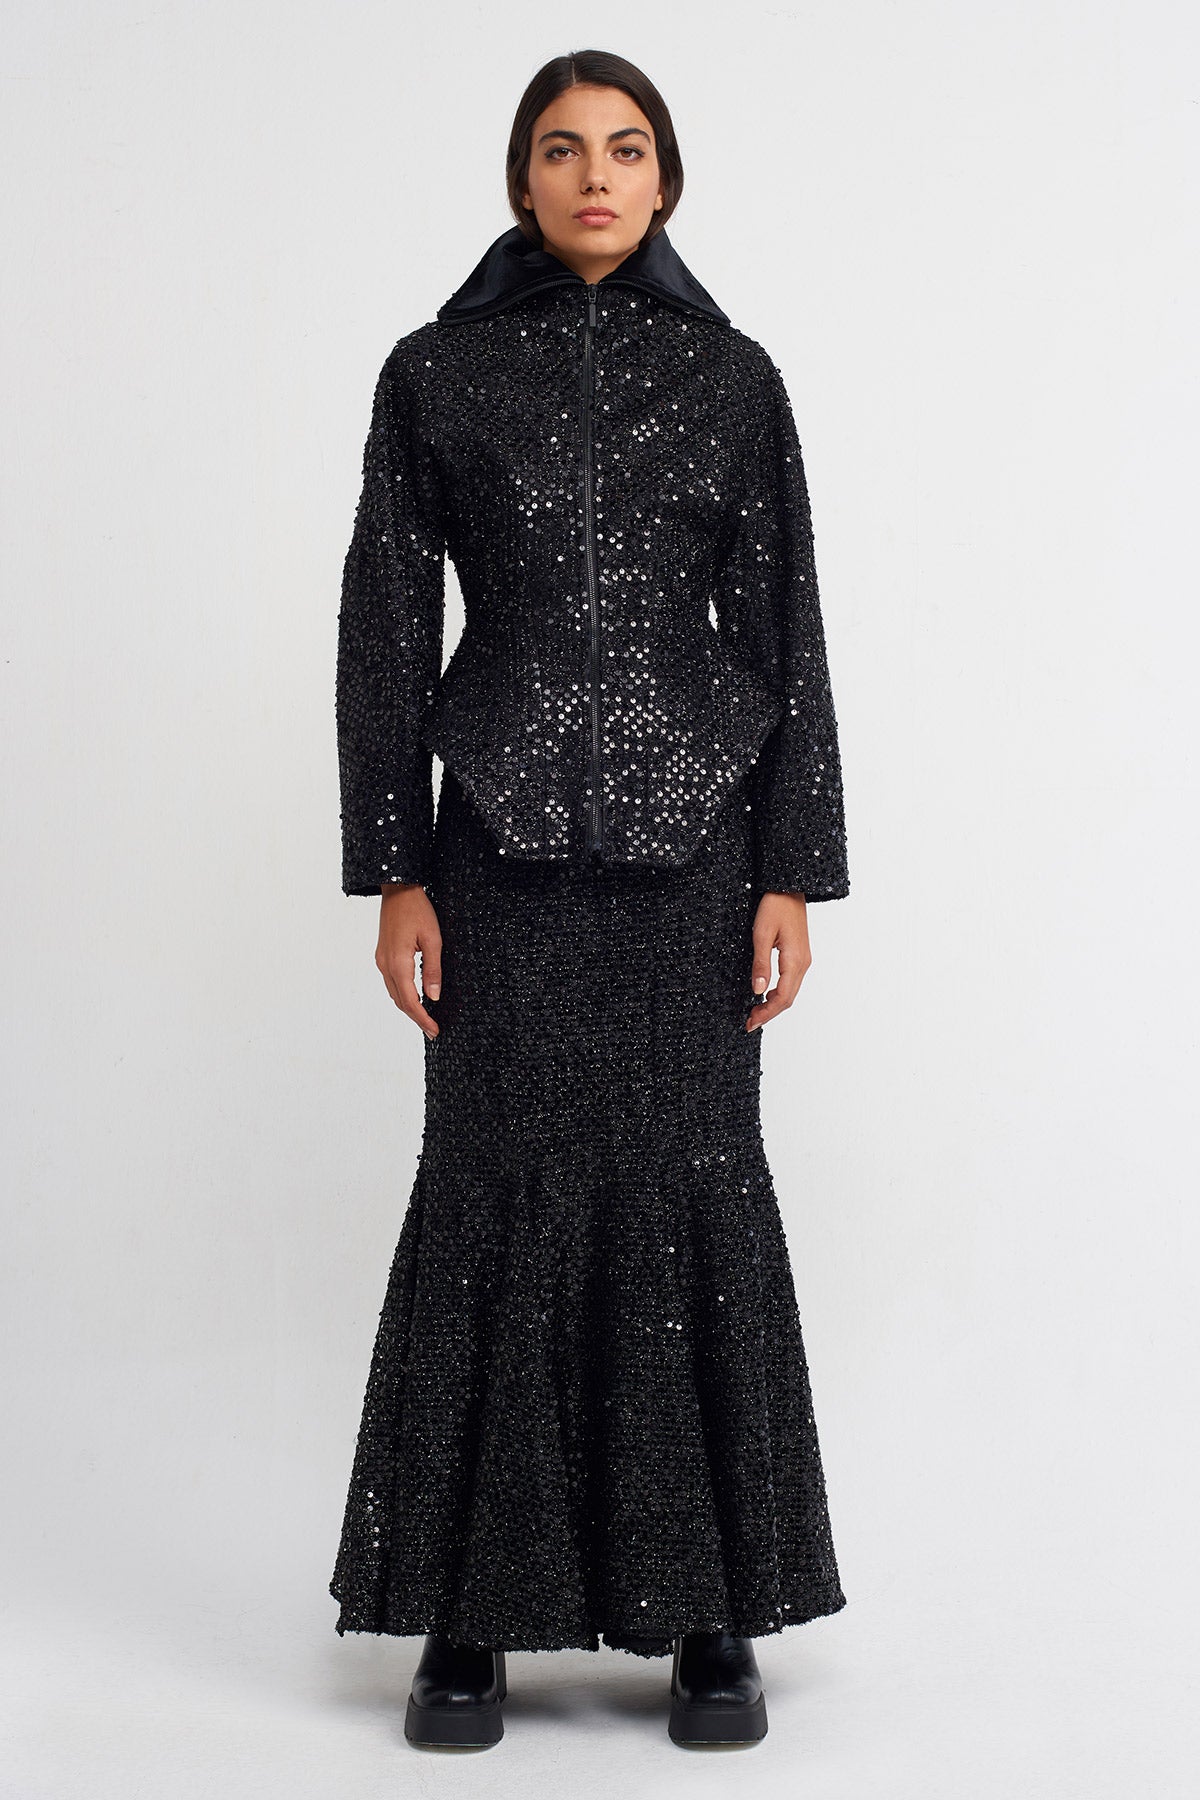 Black Sequin Embellished, Waist-Hugging Chic Jacket-K235015134